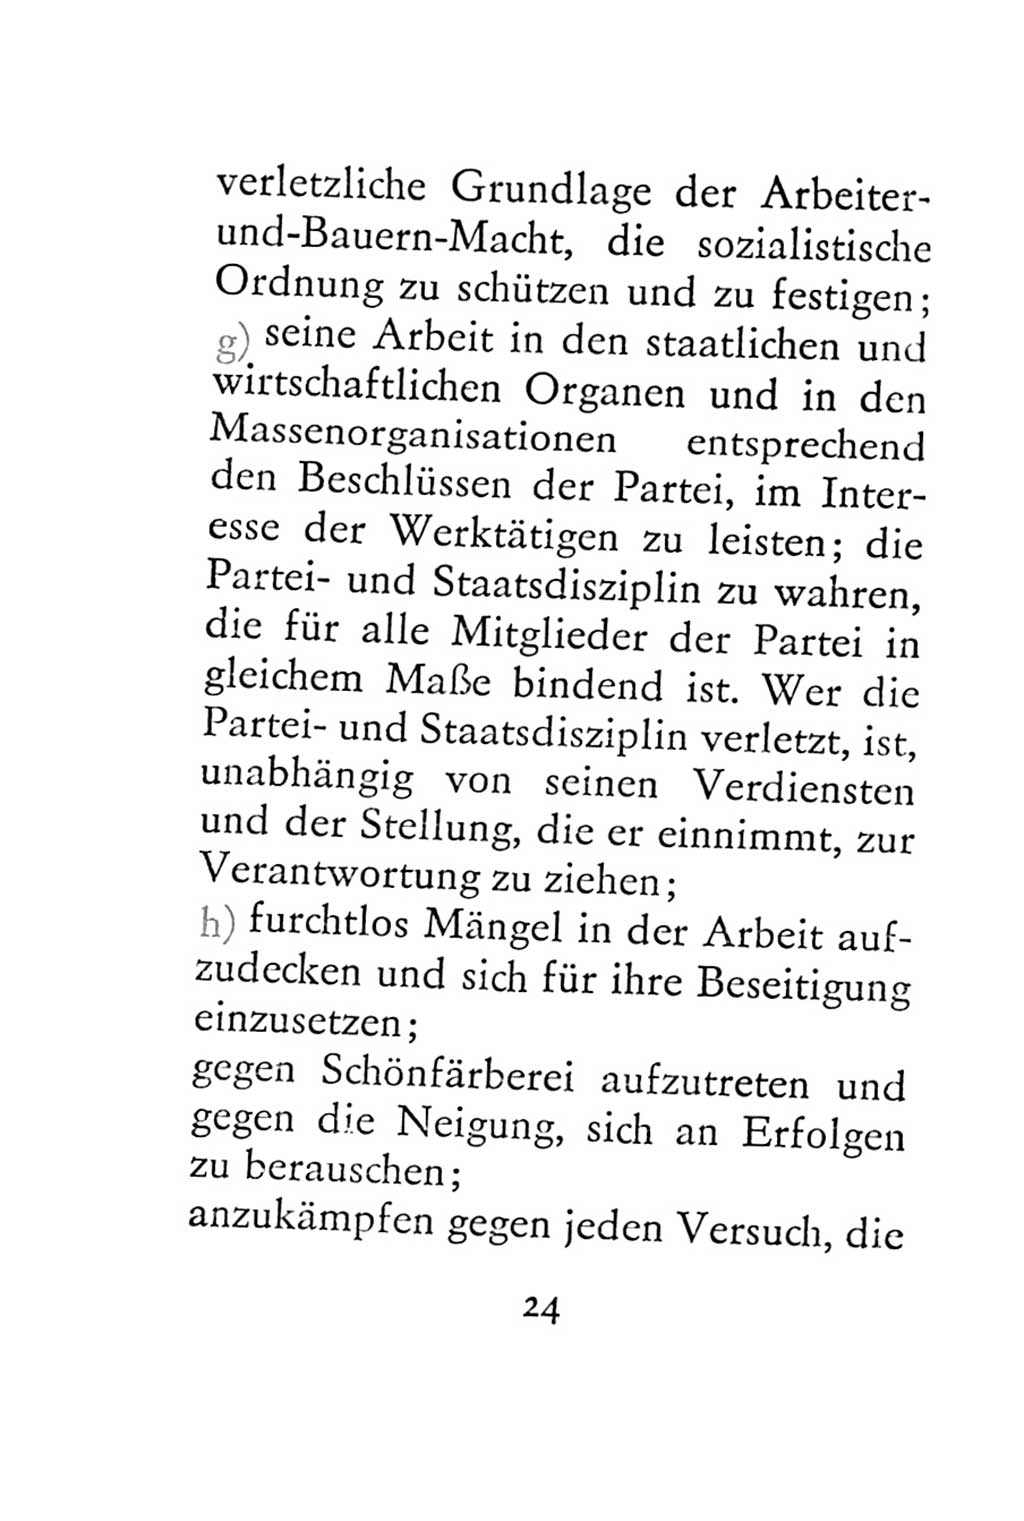 Statut der Sozialistischen Einheitspartei Deutschlands (SED) 1967, Seite 24 (St. SED DDR 1967, S. 24)